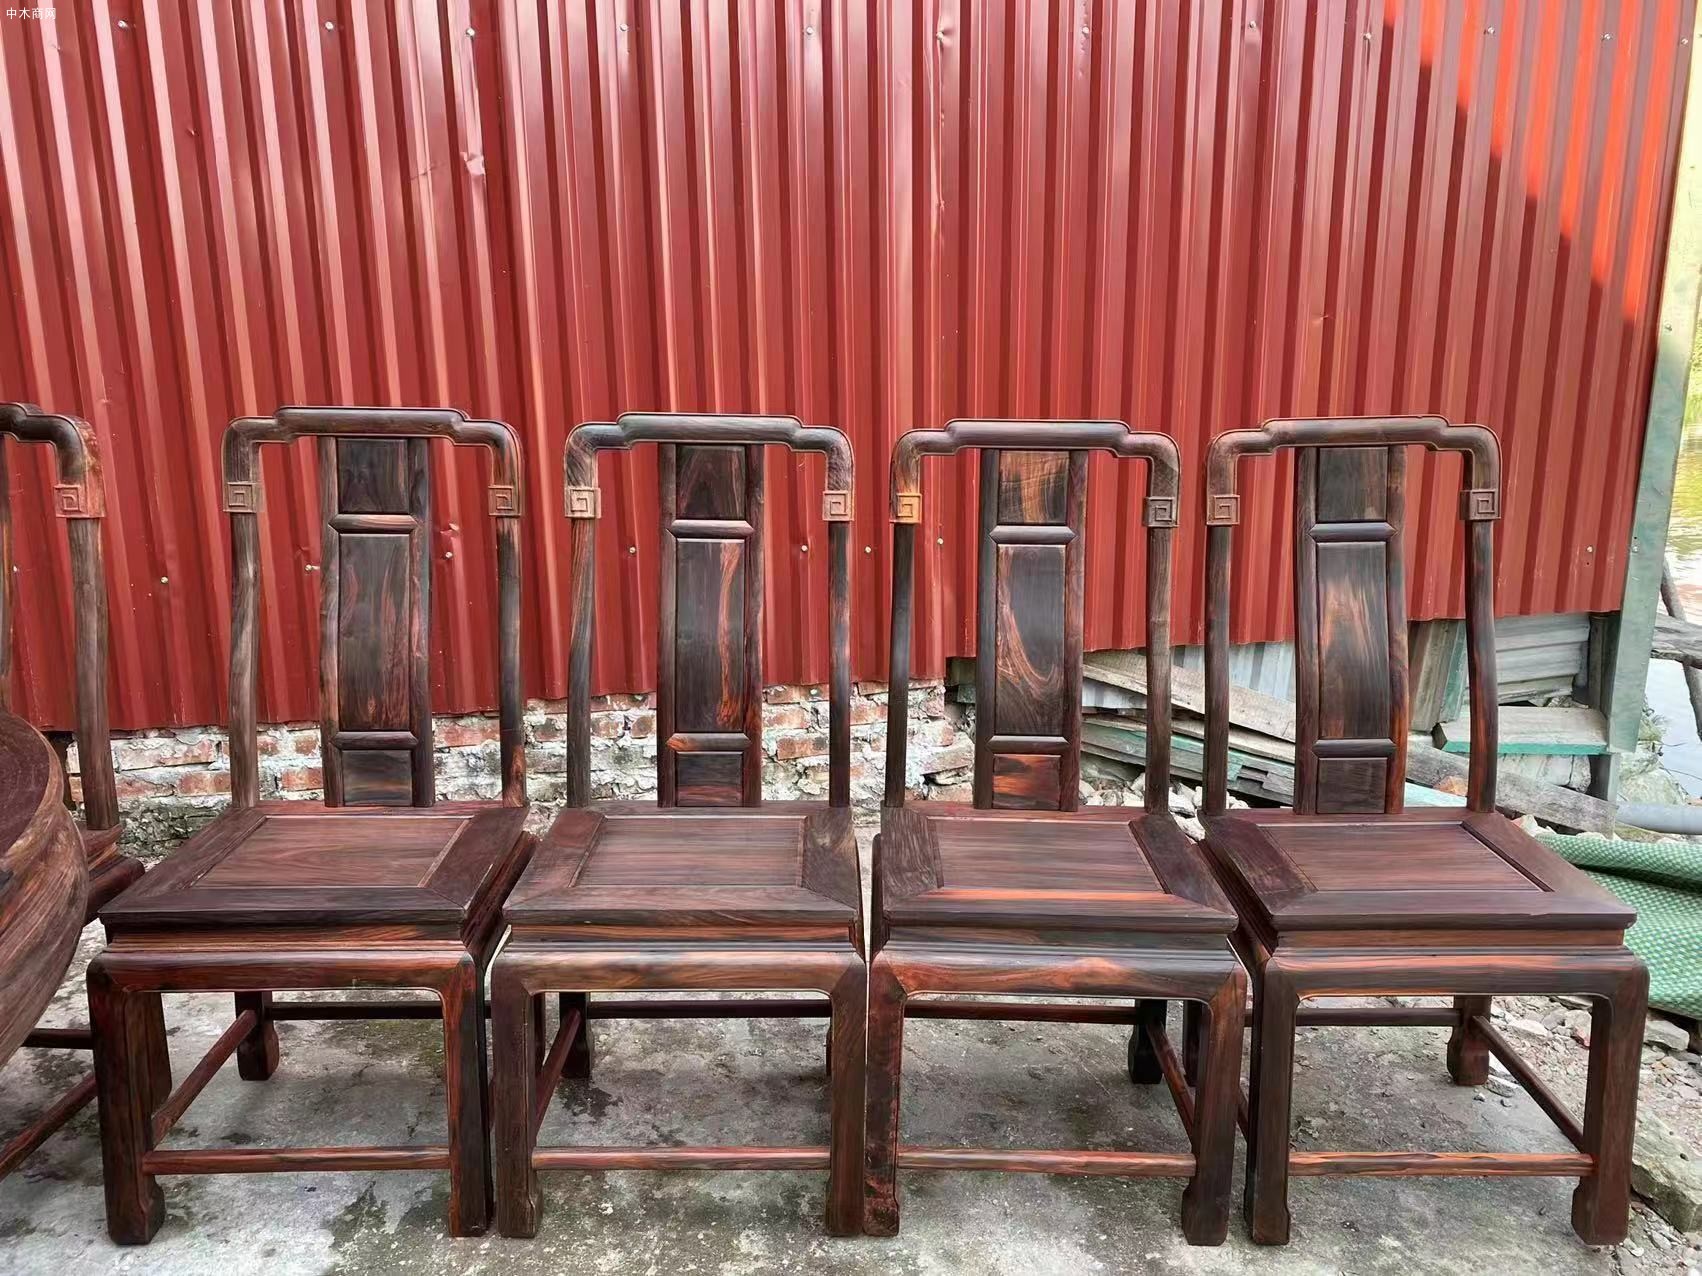 凭祥龙之涵红木家具的老挝大红酸枝圆餐桌的价格哪位清楚品牌